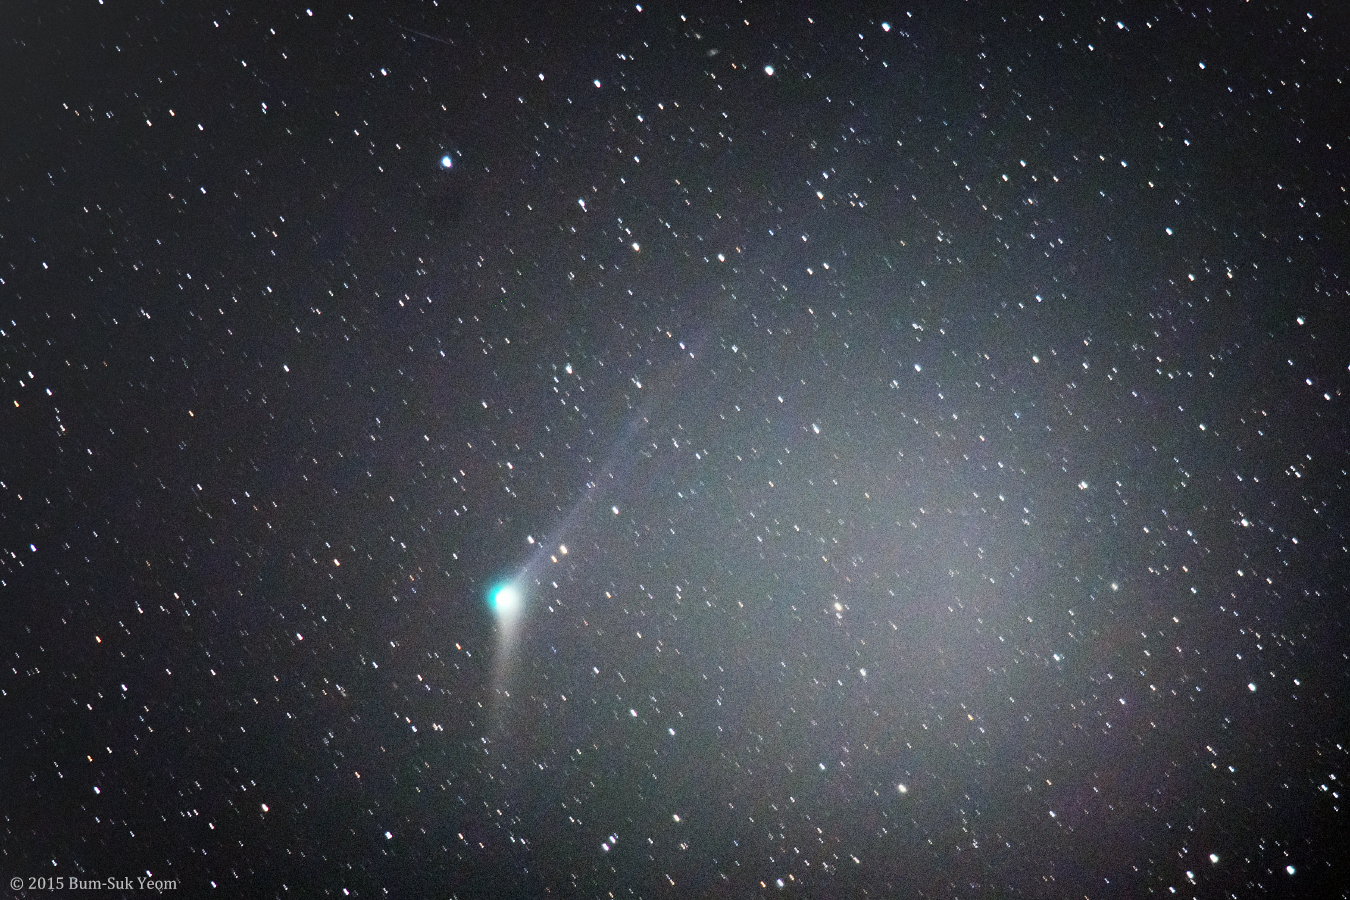 comet_catalina_20151212_web_bsyeom.jpg